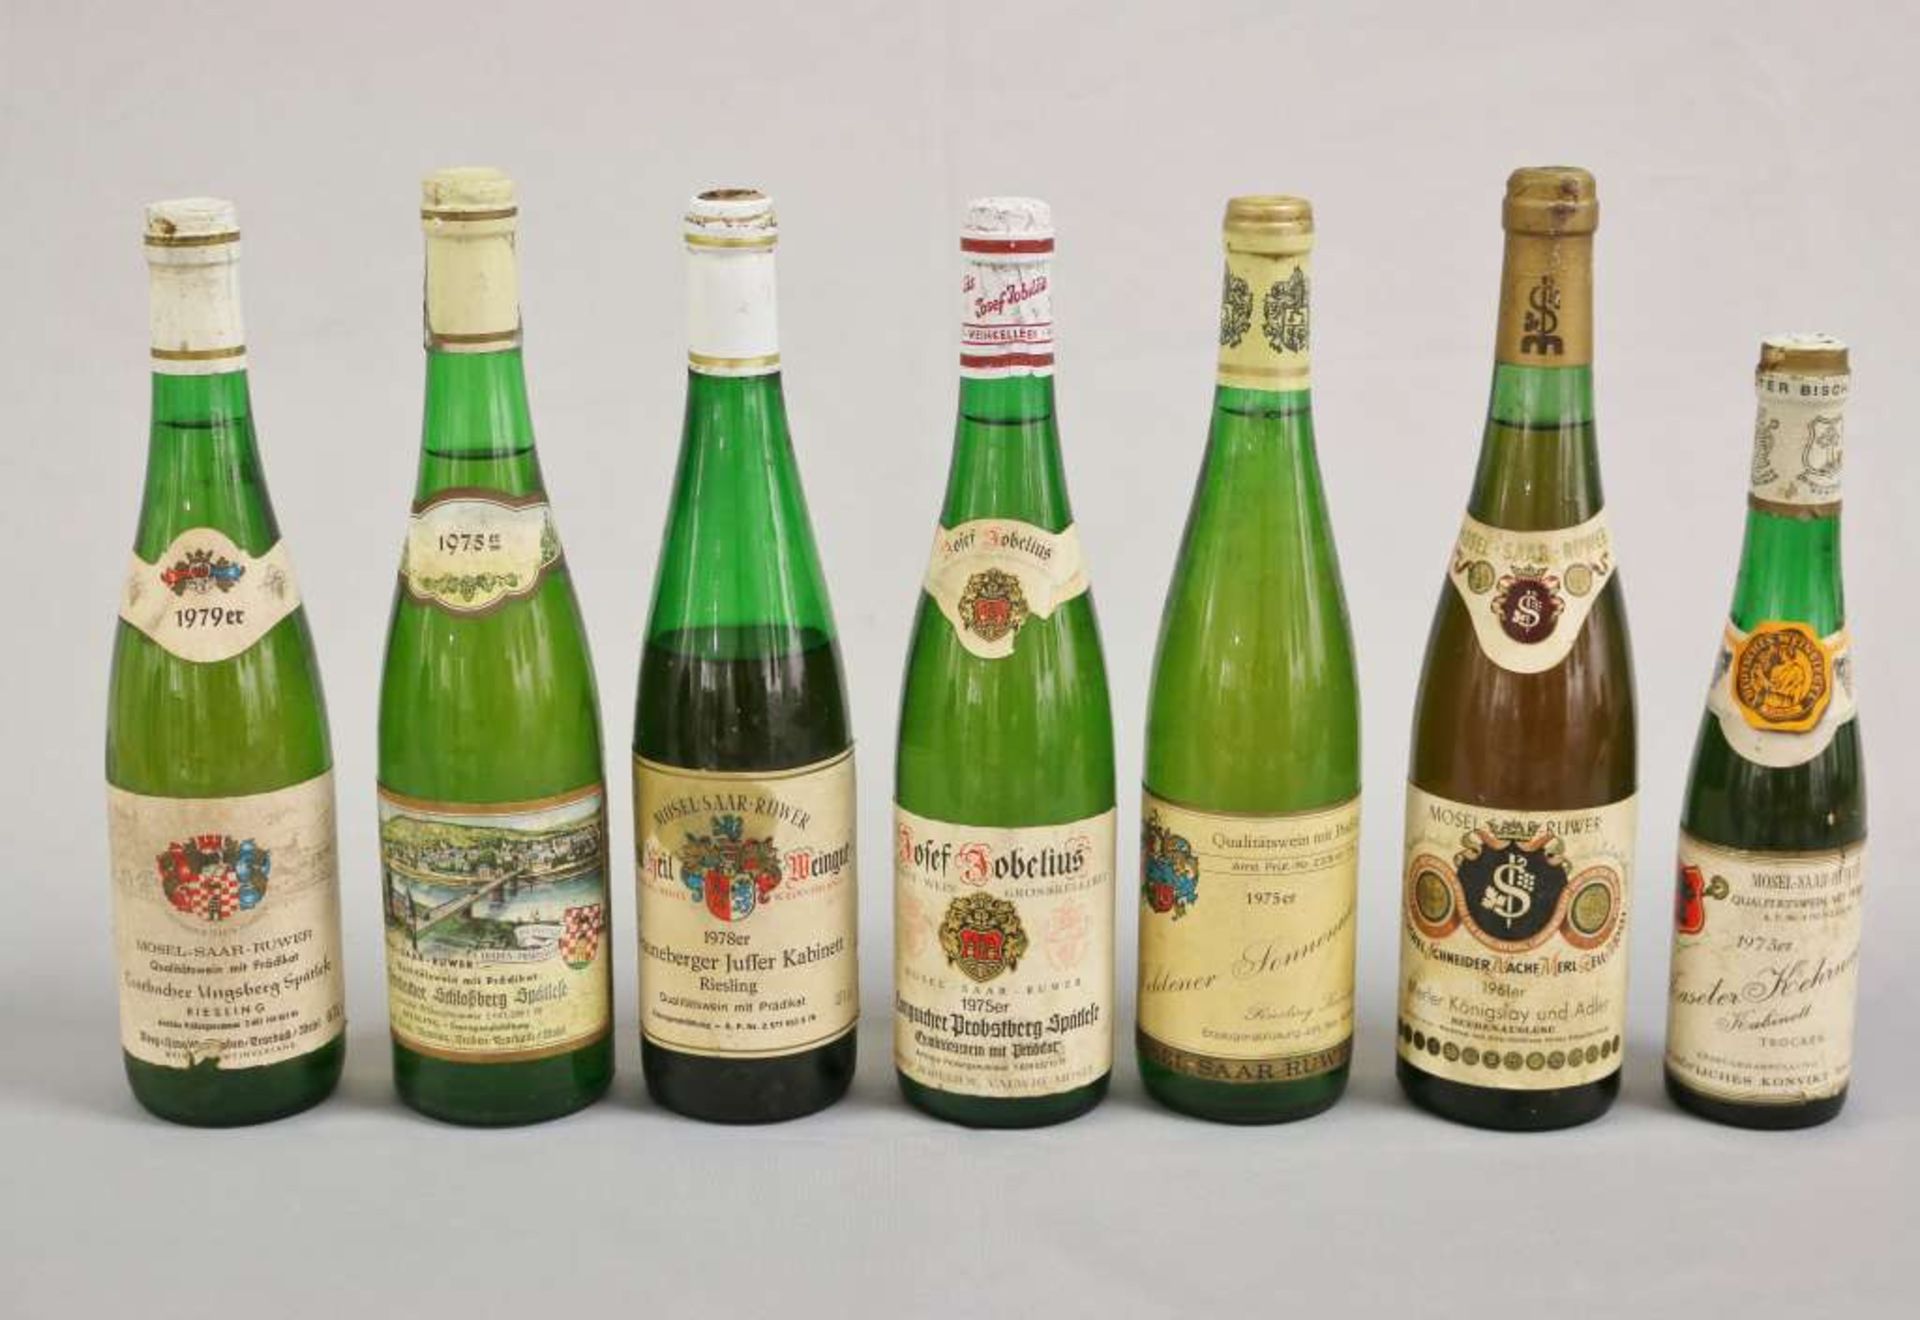 Weißwein u. Süßwein, 7 Flaschen, Mosel-Saar-Ruwer: Merler Königslay und Adler 1961 Beerenausleses;